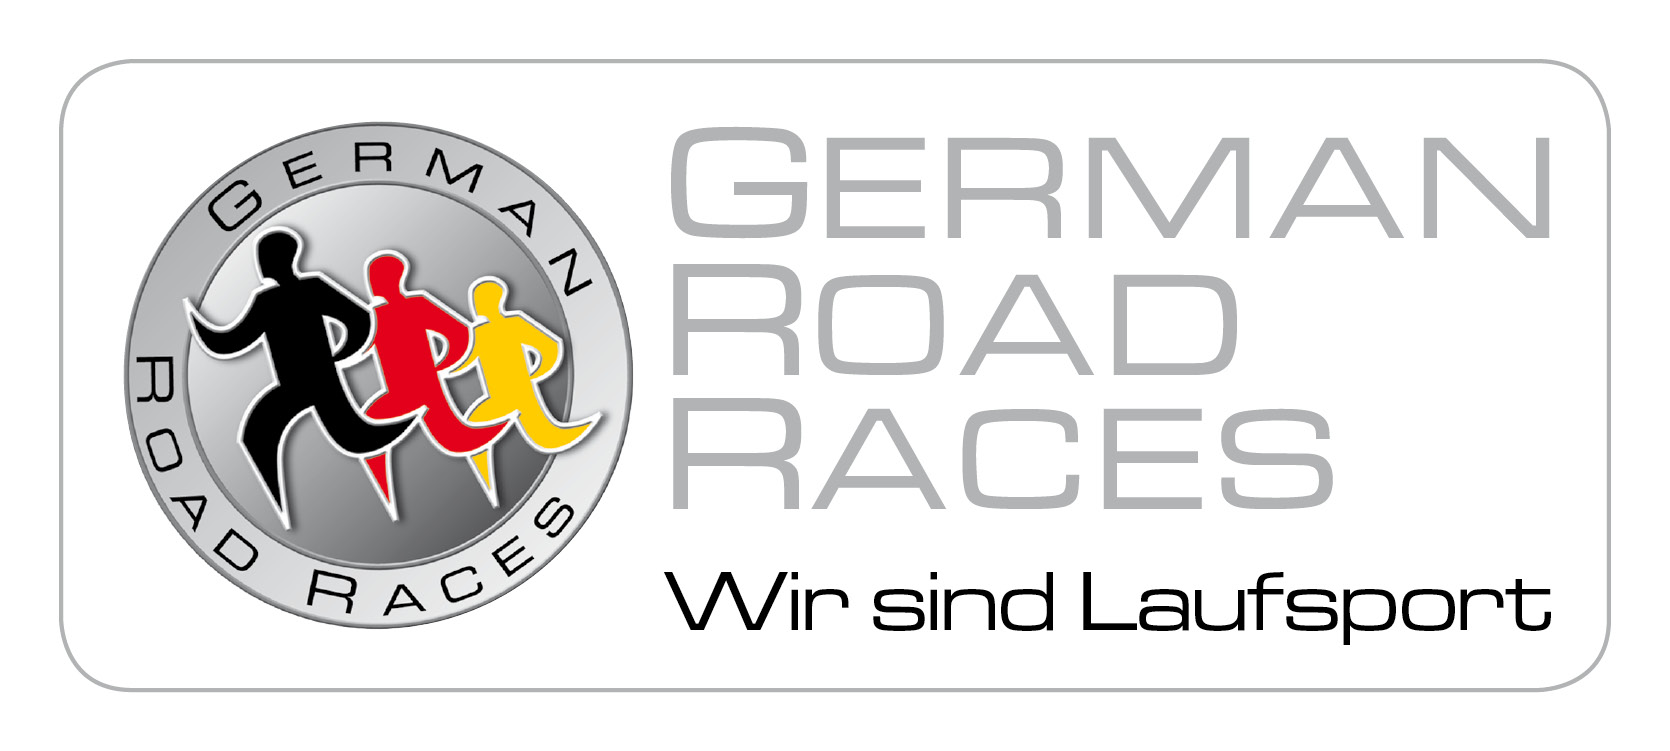 German Road Races